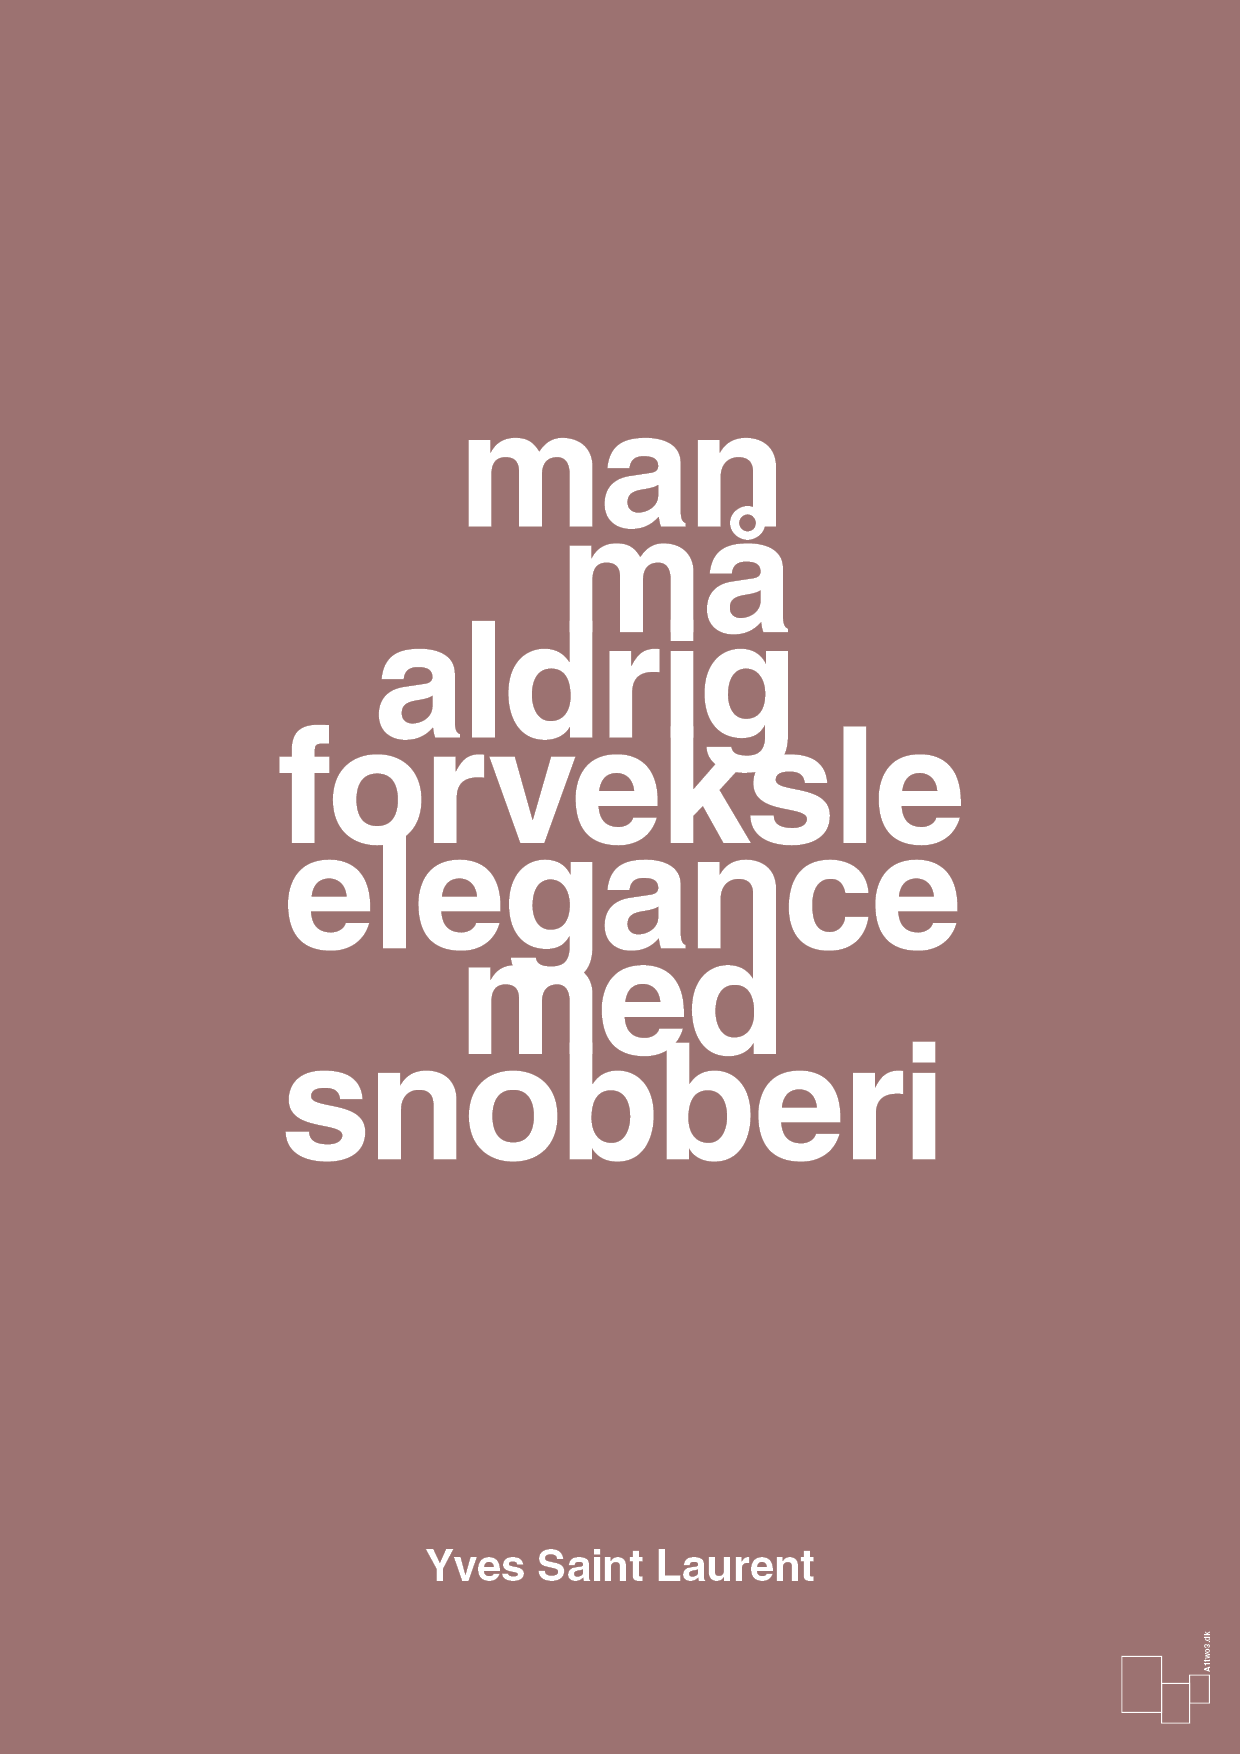 man må aldrig forveksle elegance med snobberi - Plakat med Citater i Plum